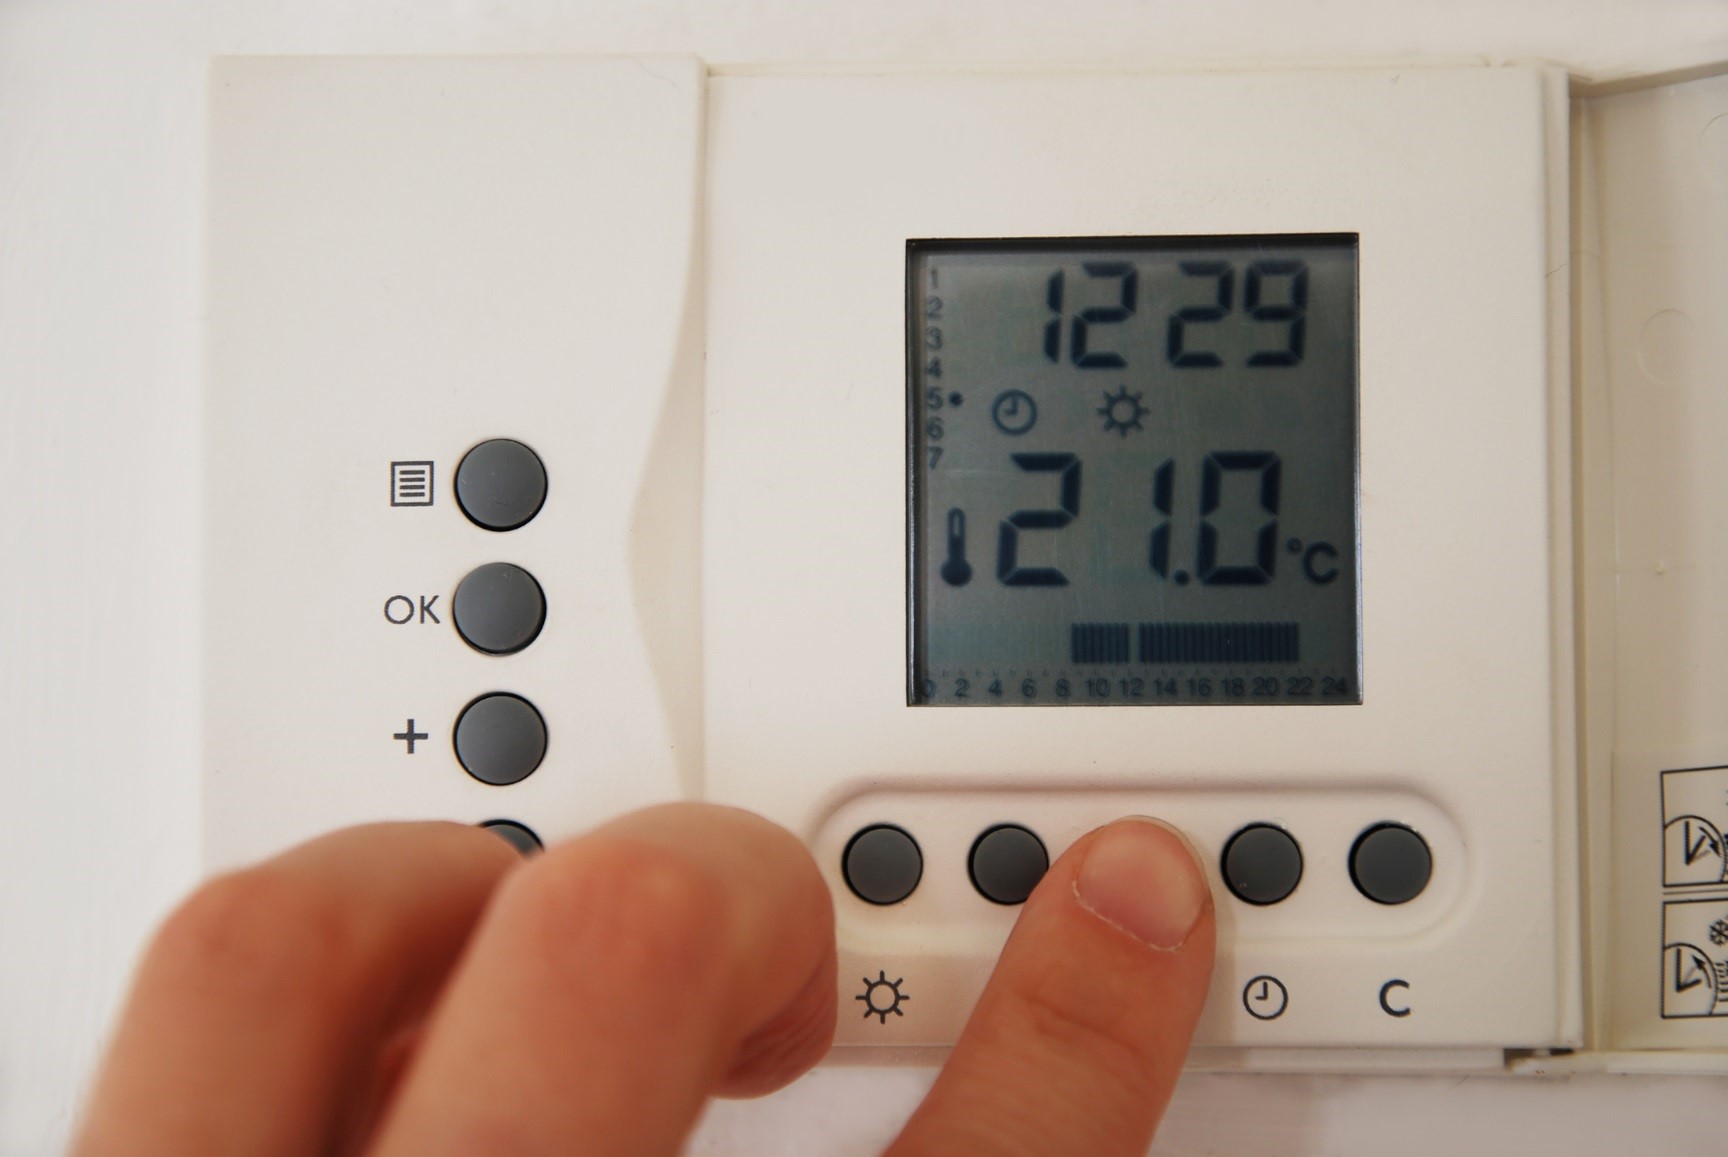 Dejar la calefacción al mínimo o apagarla y encenderla en invierno: cuál es la opción más eficiente y con la que más se ahorra